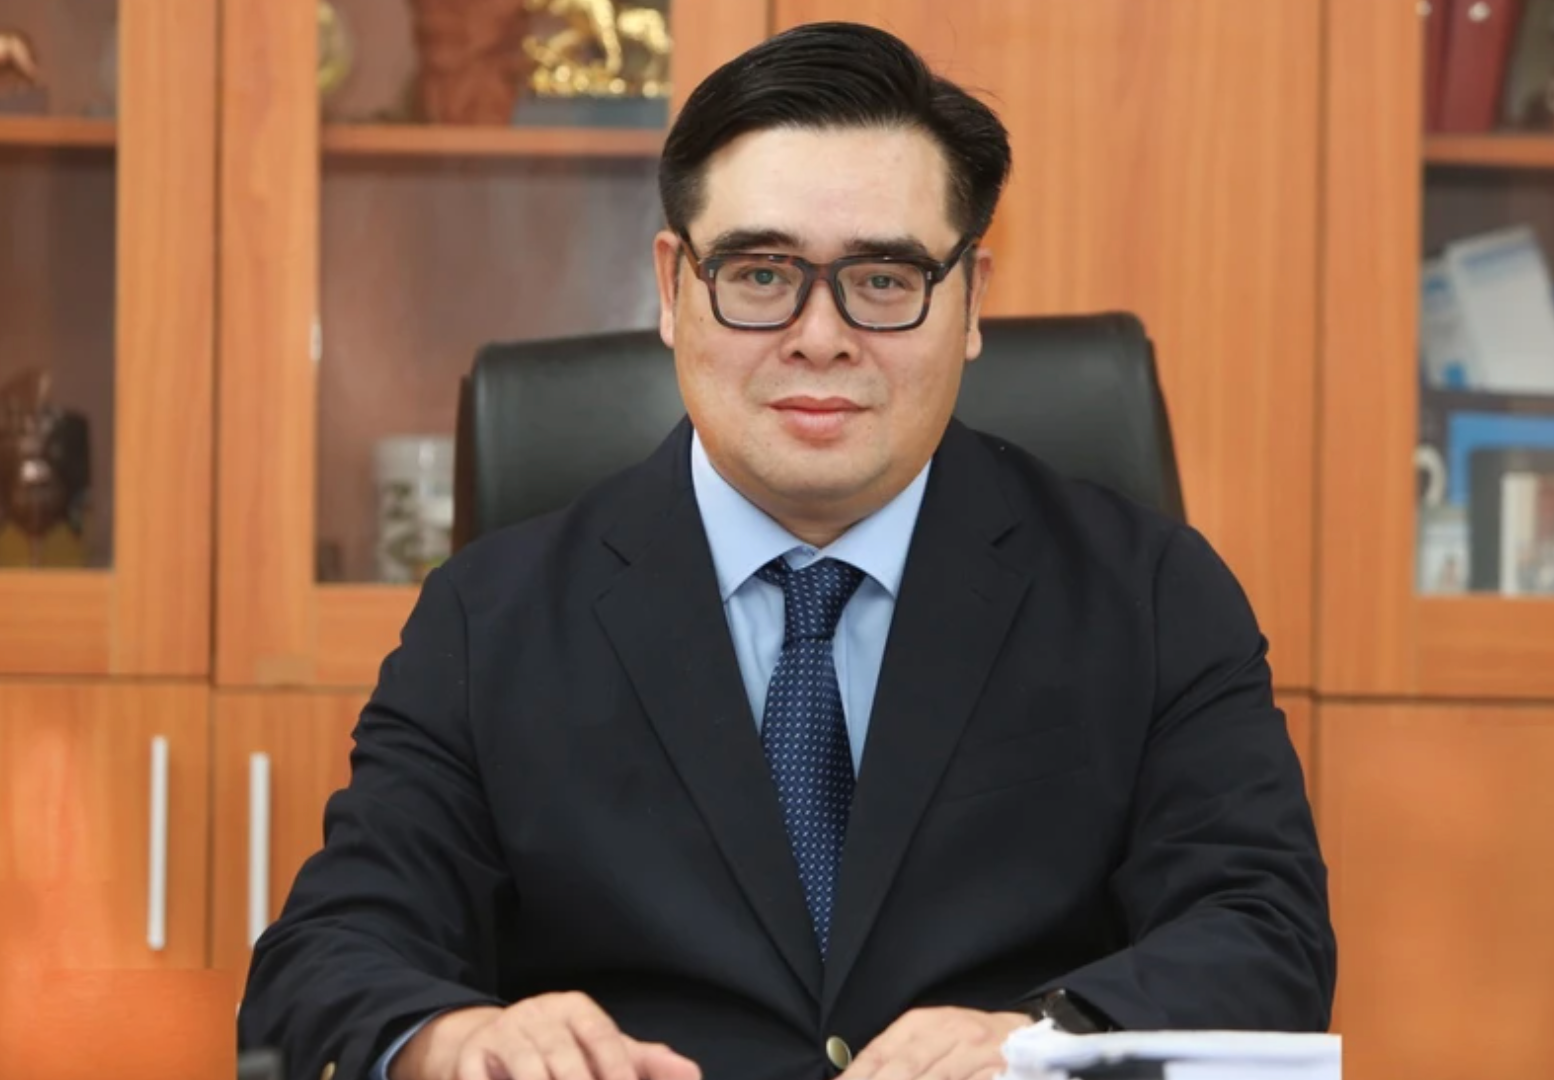 Ông Ngô Việt Trung - Cục trưởng Cục Quản lý và Giám sát bảo hiểm (Bộ Tài chính)